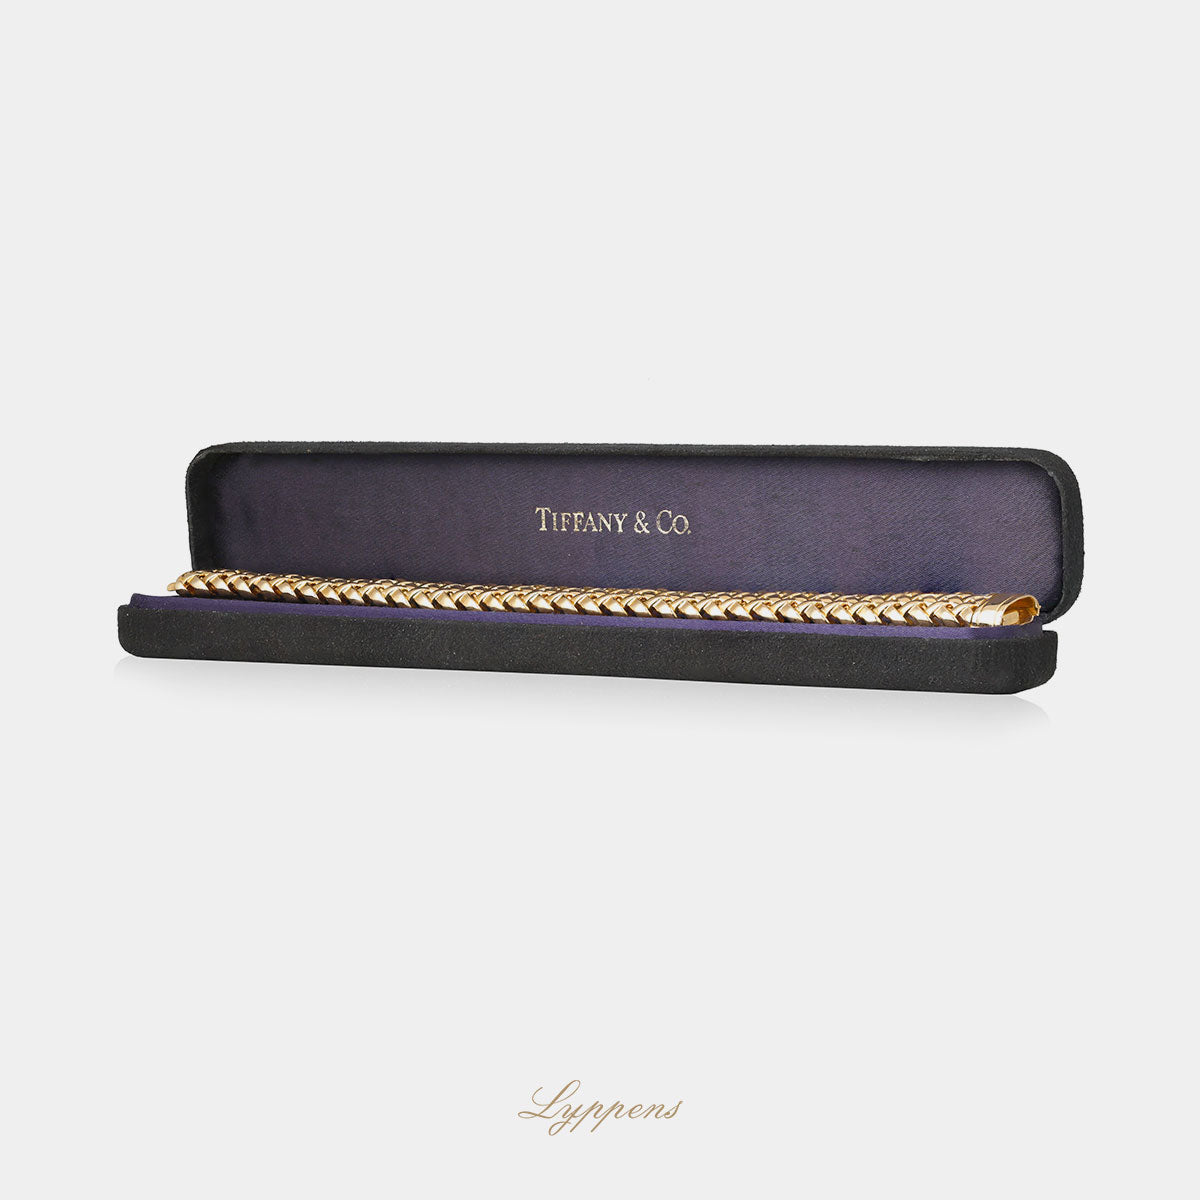 Geelgouden vintage Tiffany & co armband van de Vannerie collectie in de originele doos.